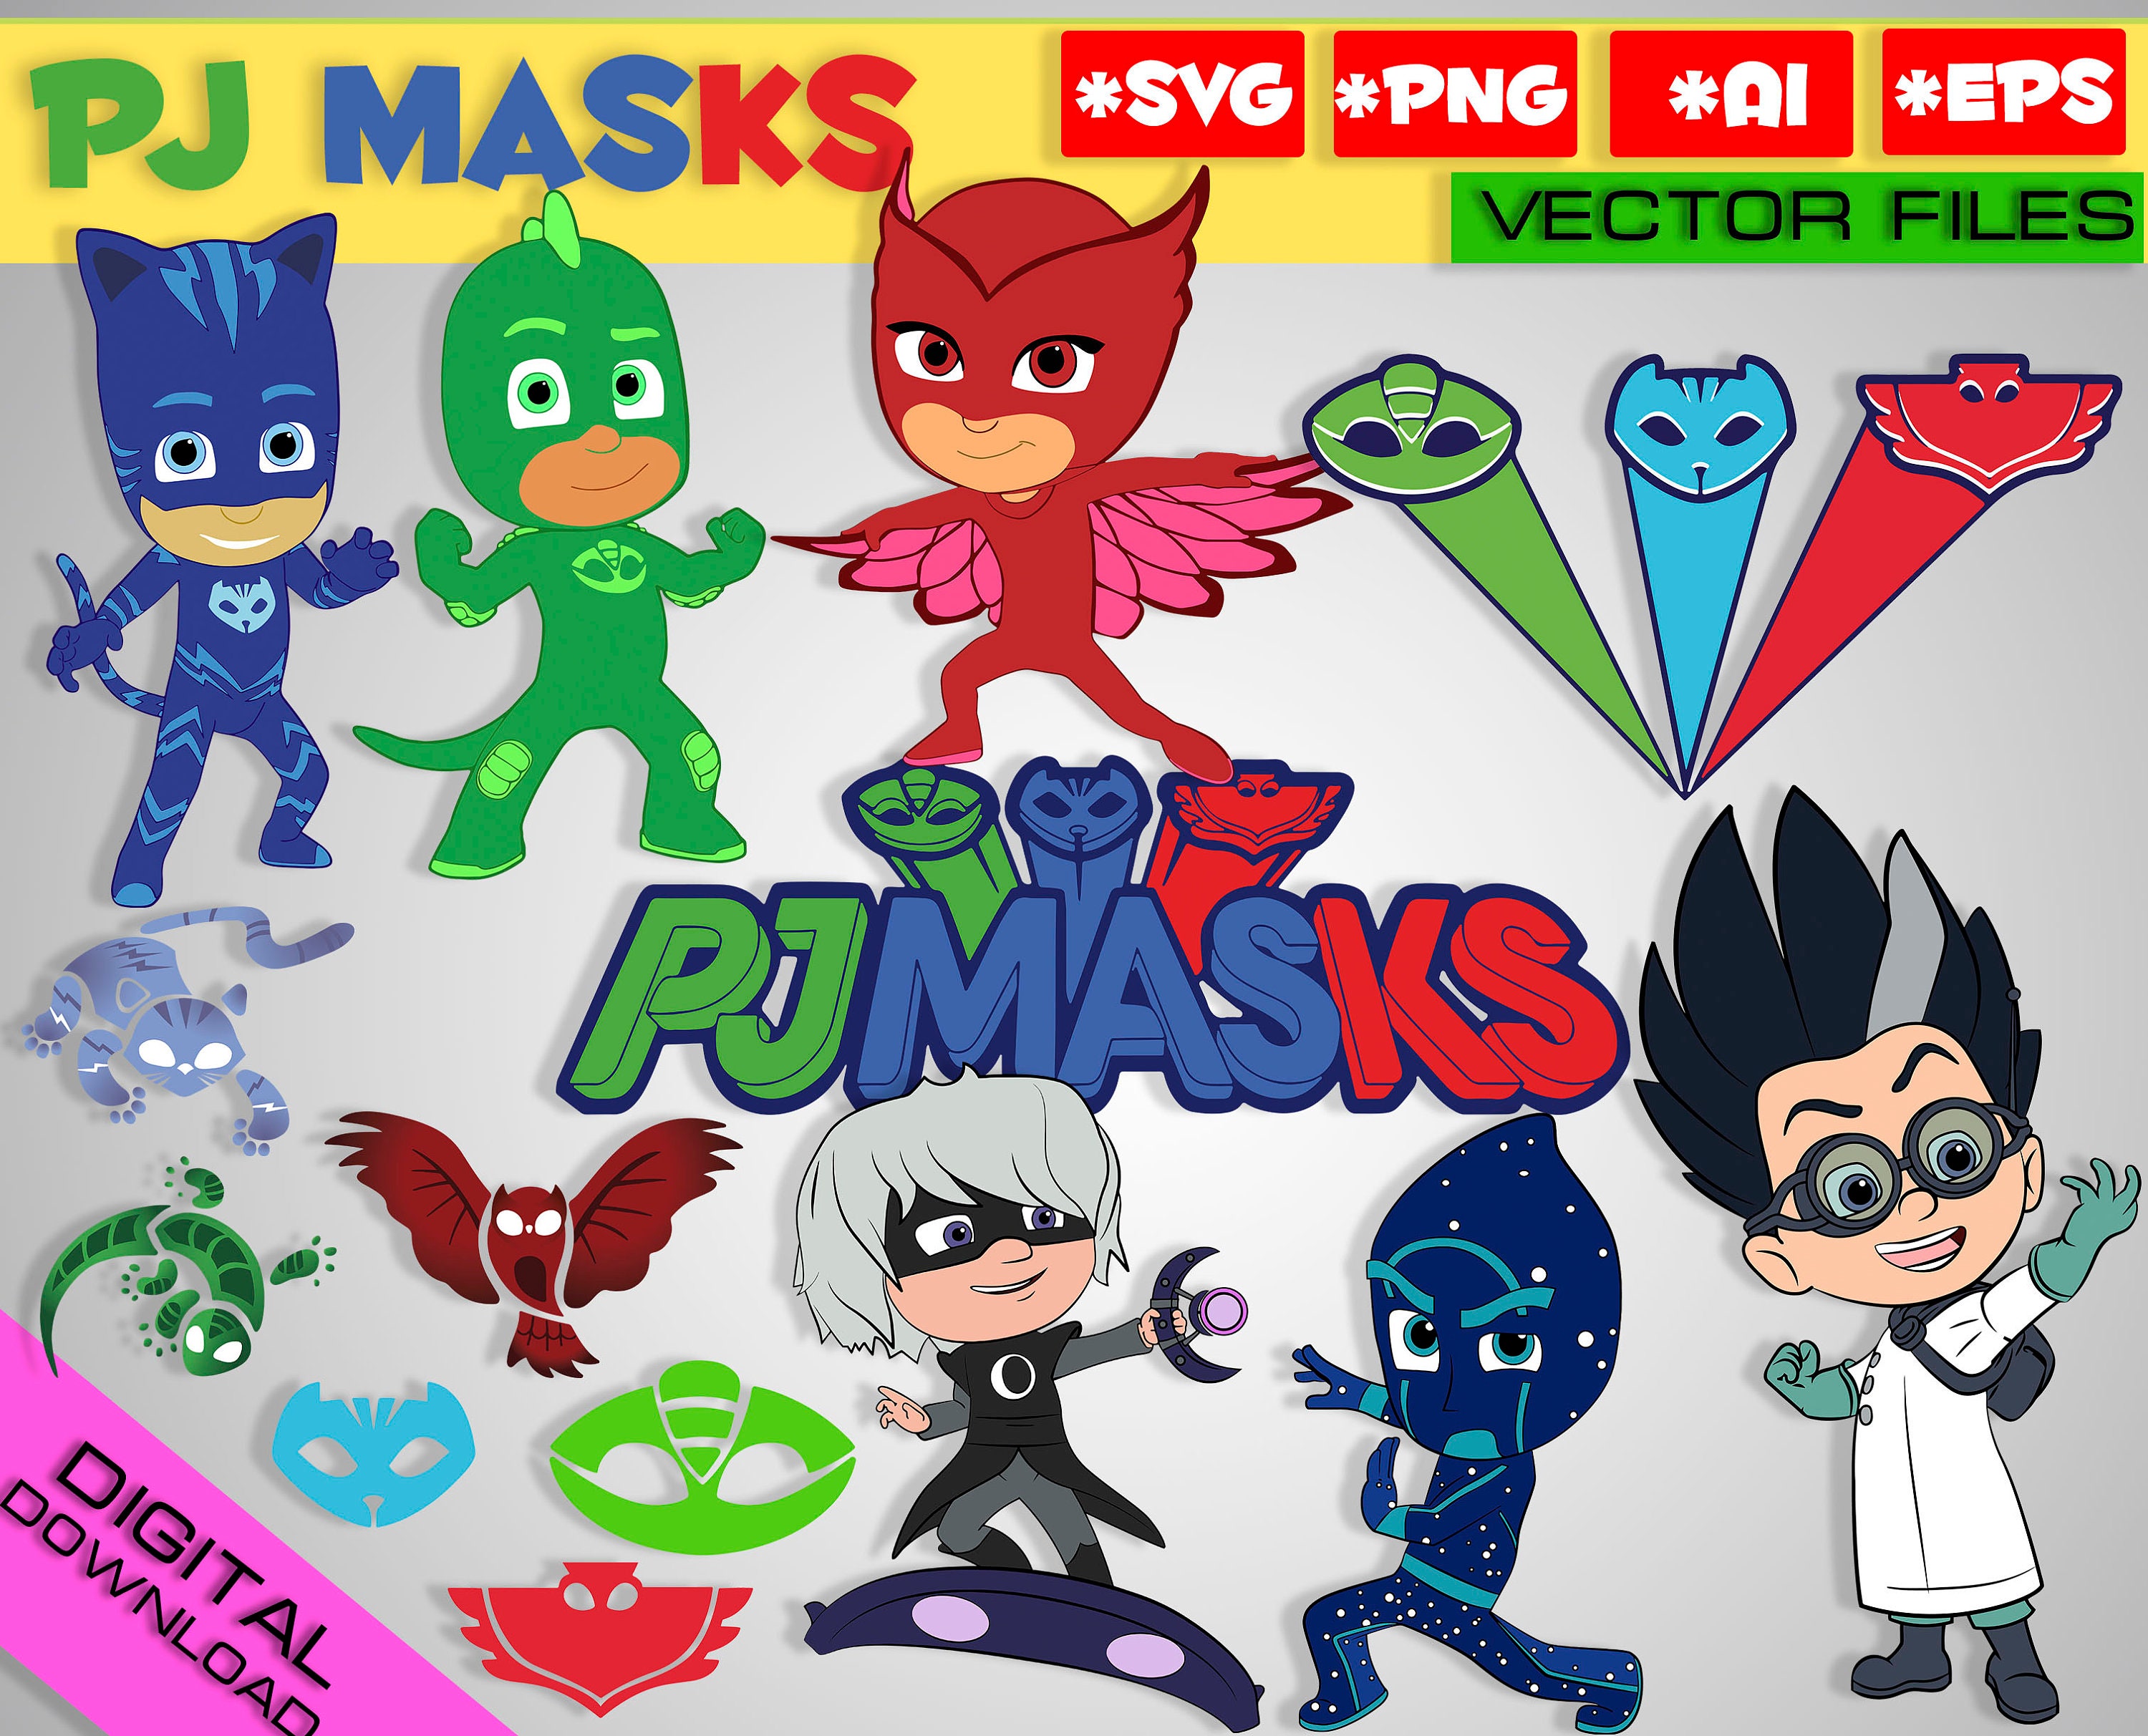 Download PJ masks SVG png EPS 14 vector files Digital masks clipart